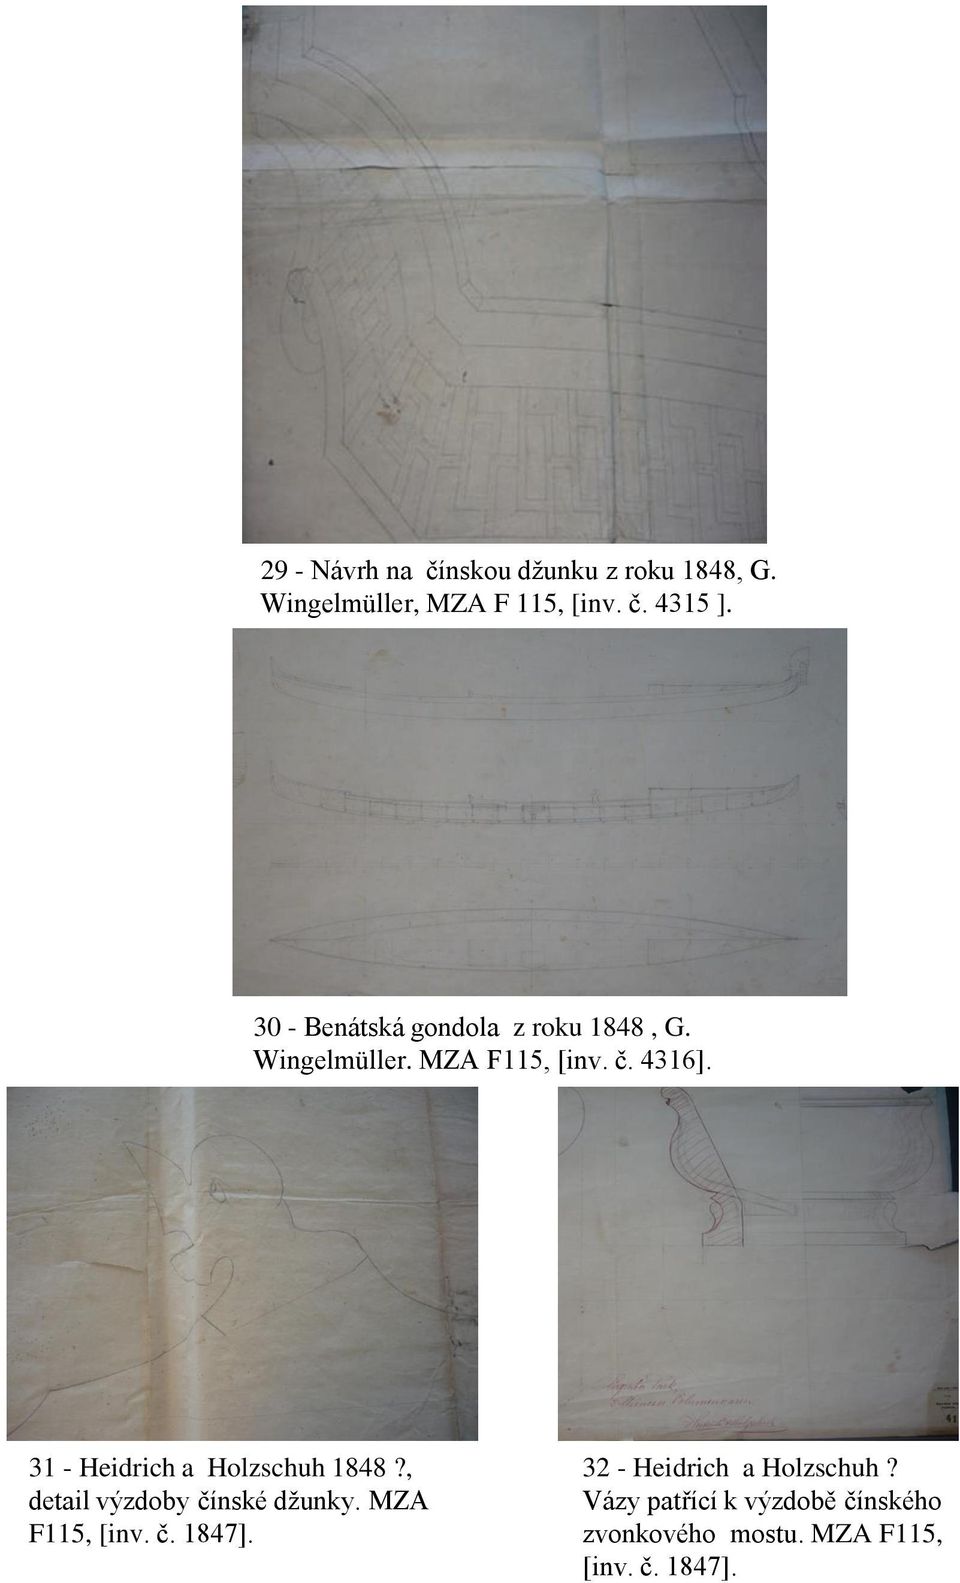 31 - Heidrich a Holzschuh 1848?, detail výzdoby čínské džunky. MZA F115, [inv. č. 1847].